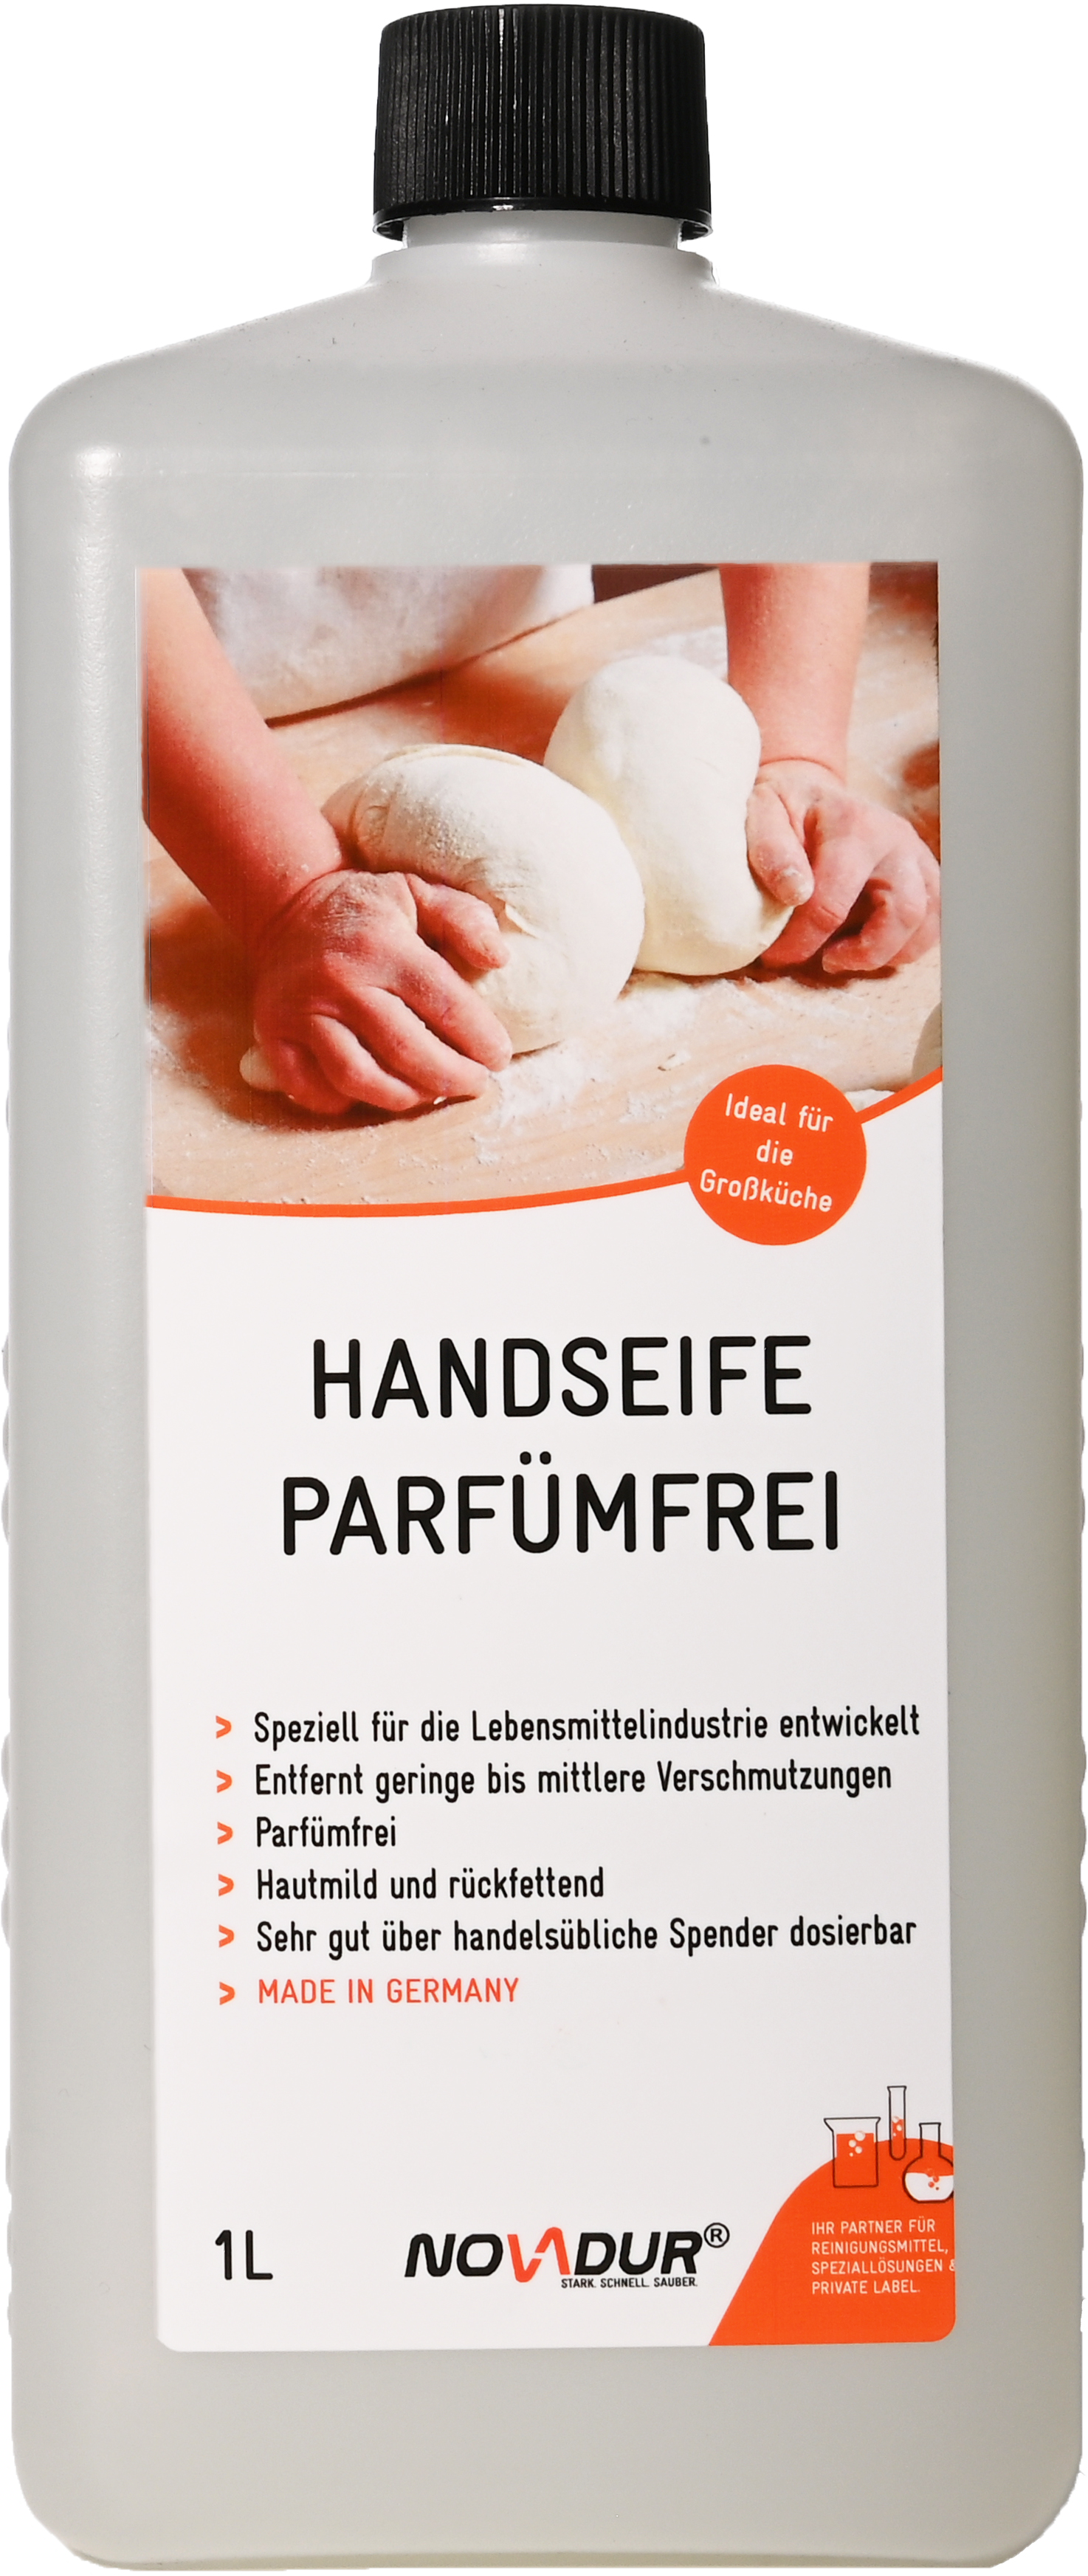 Handseife Parfümfrei